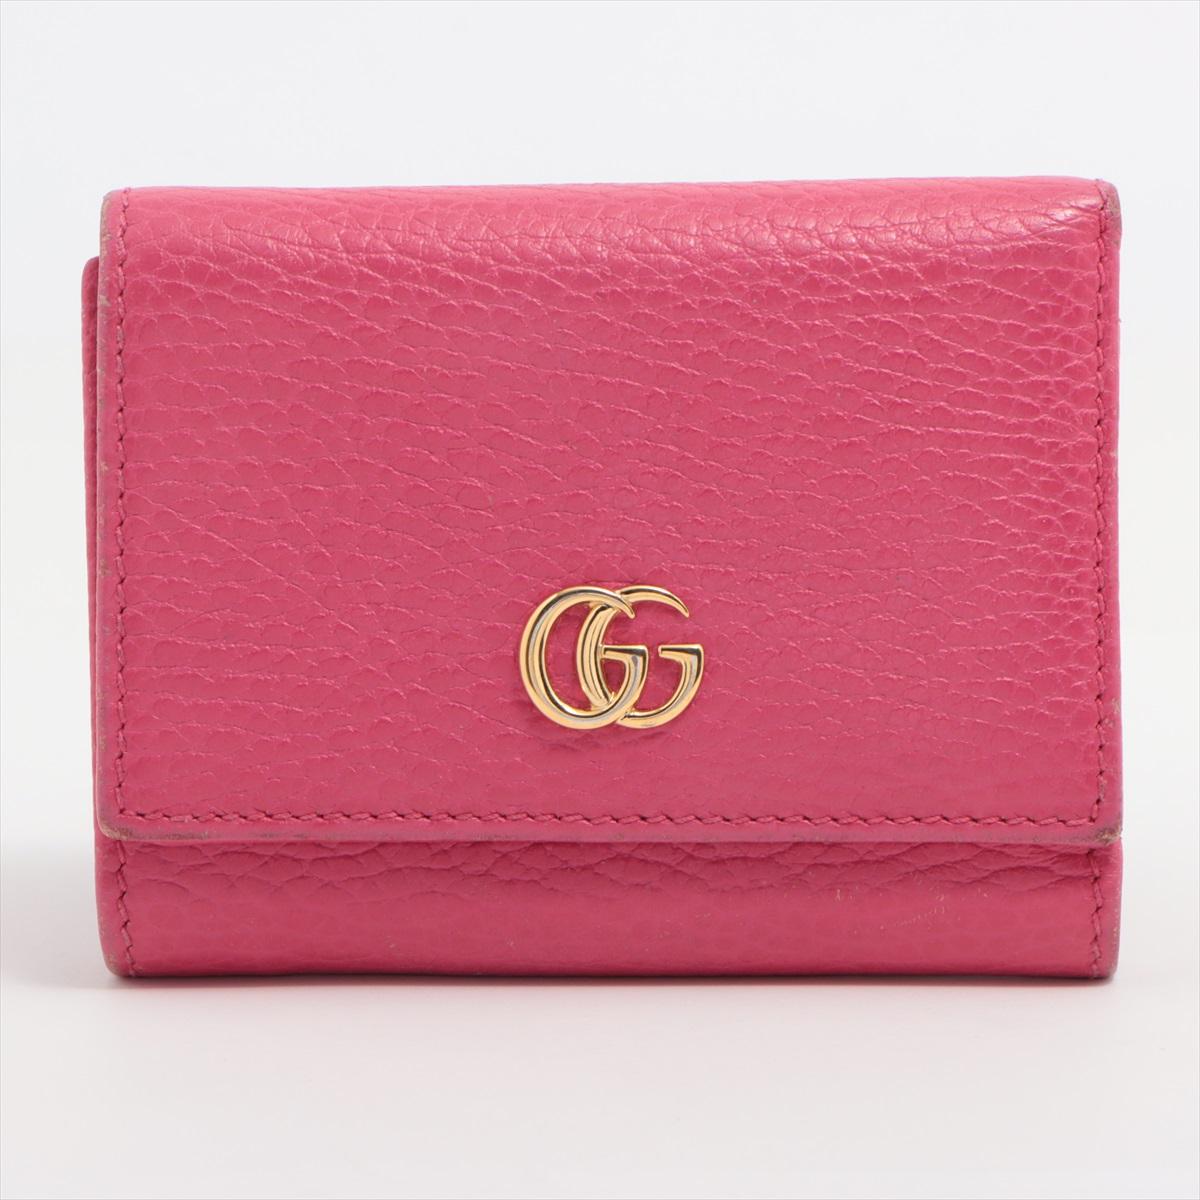 Le portefeuille compact en cuir GG Marmont de Gucci, en rose, est un accessoire élégant et compact qui allie harmonieusement luxe et design moderne. Méticuleusement confectionné en cuir lisse, ce portefeuille arbore le motif à chevrons GG Marmont